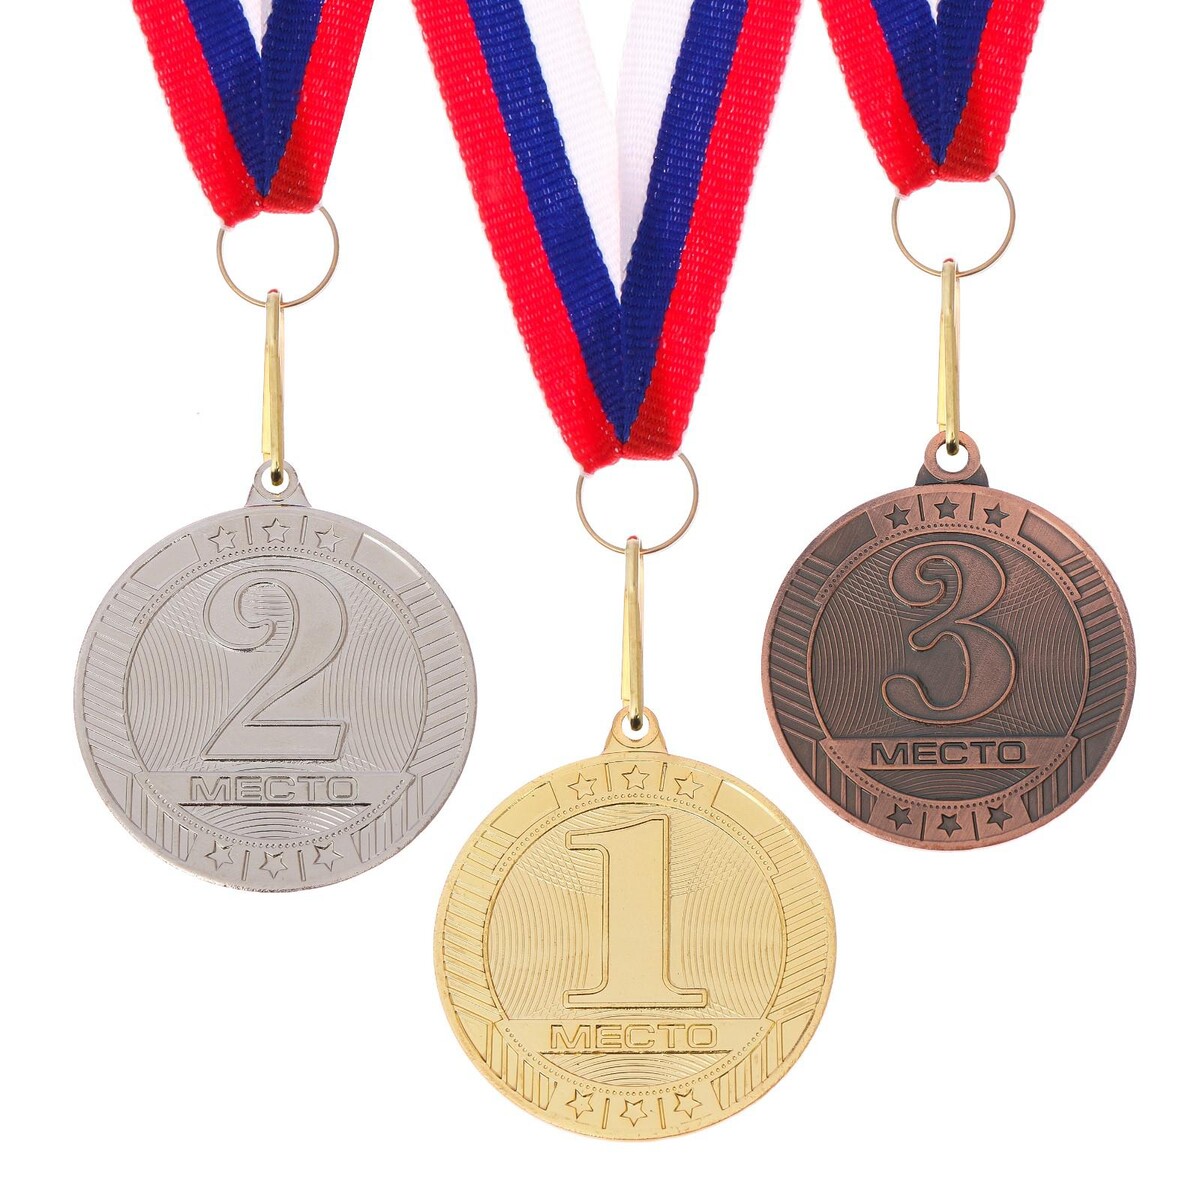 Медали награды купить. Медали спортивные. Медали наградные спортивные. Медаль спорт. Необычные медали спортивные.